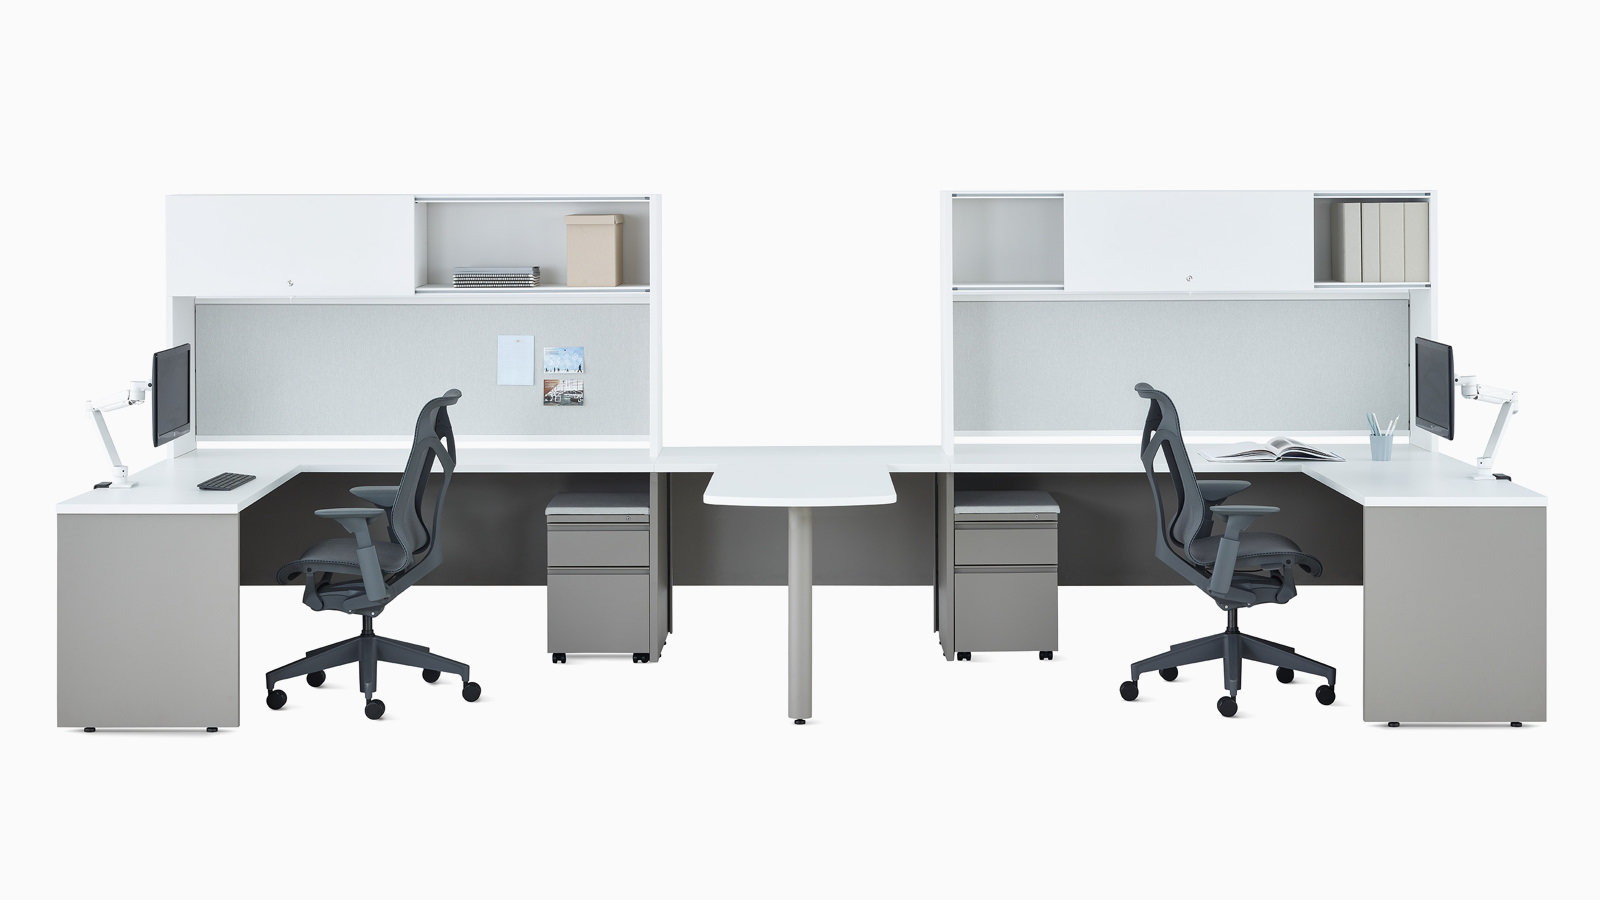 Dos escritorios metálicos Canvas en blanco y gris con almacenamiento superior, brazos articulados para monitor Concerto y sillas Cosm en gris oscuro.